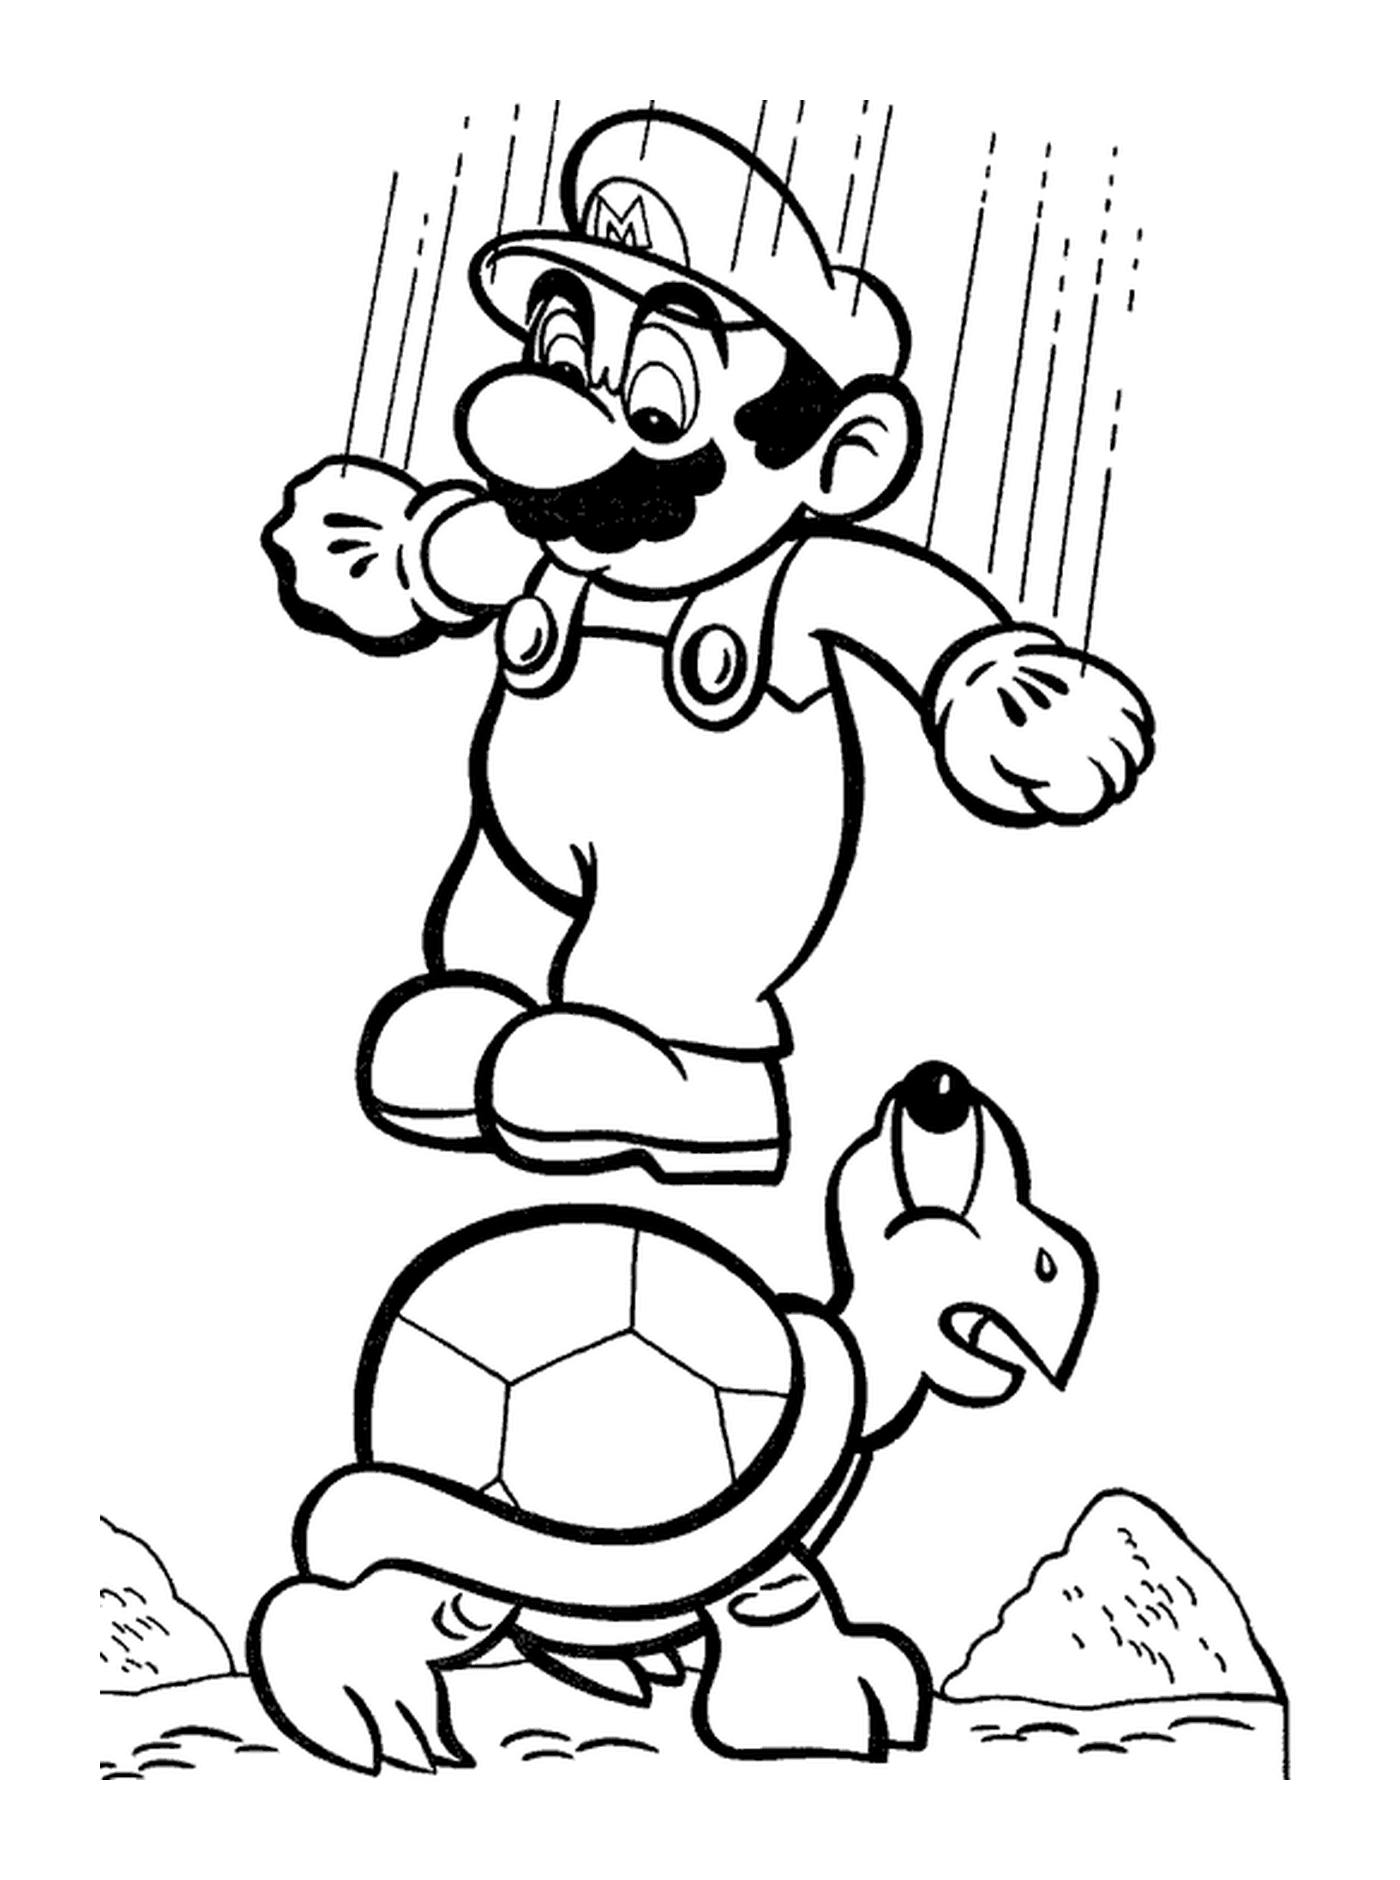 Mario saute sur une tortue